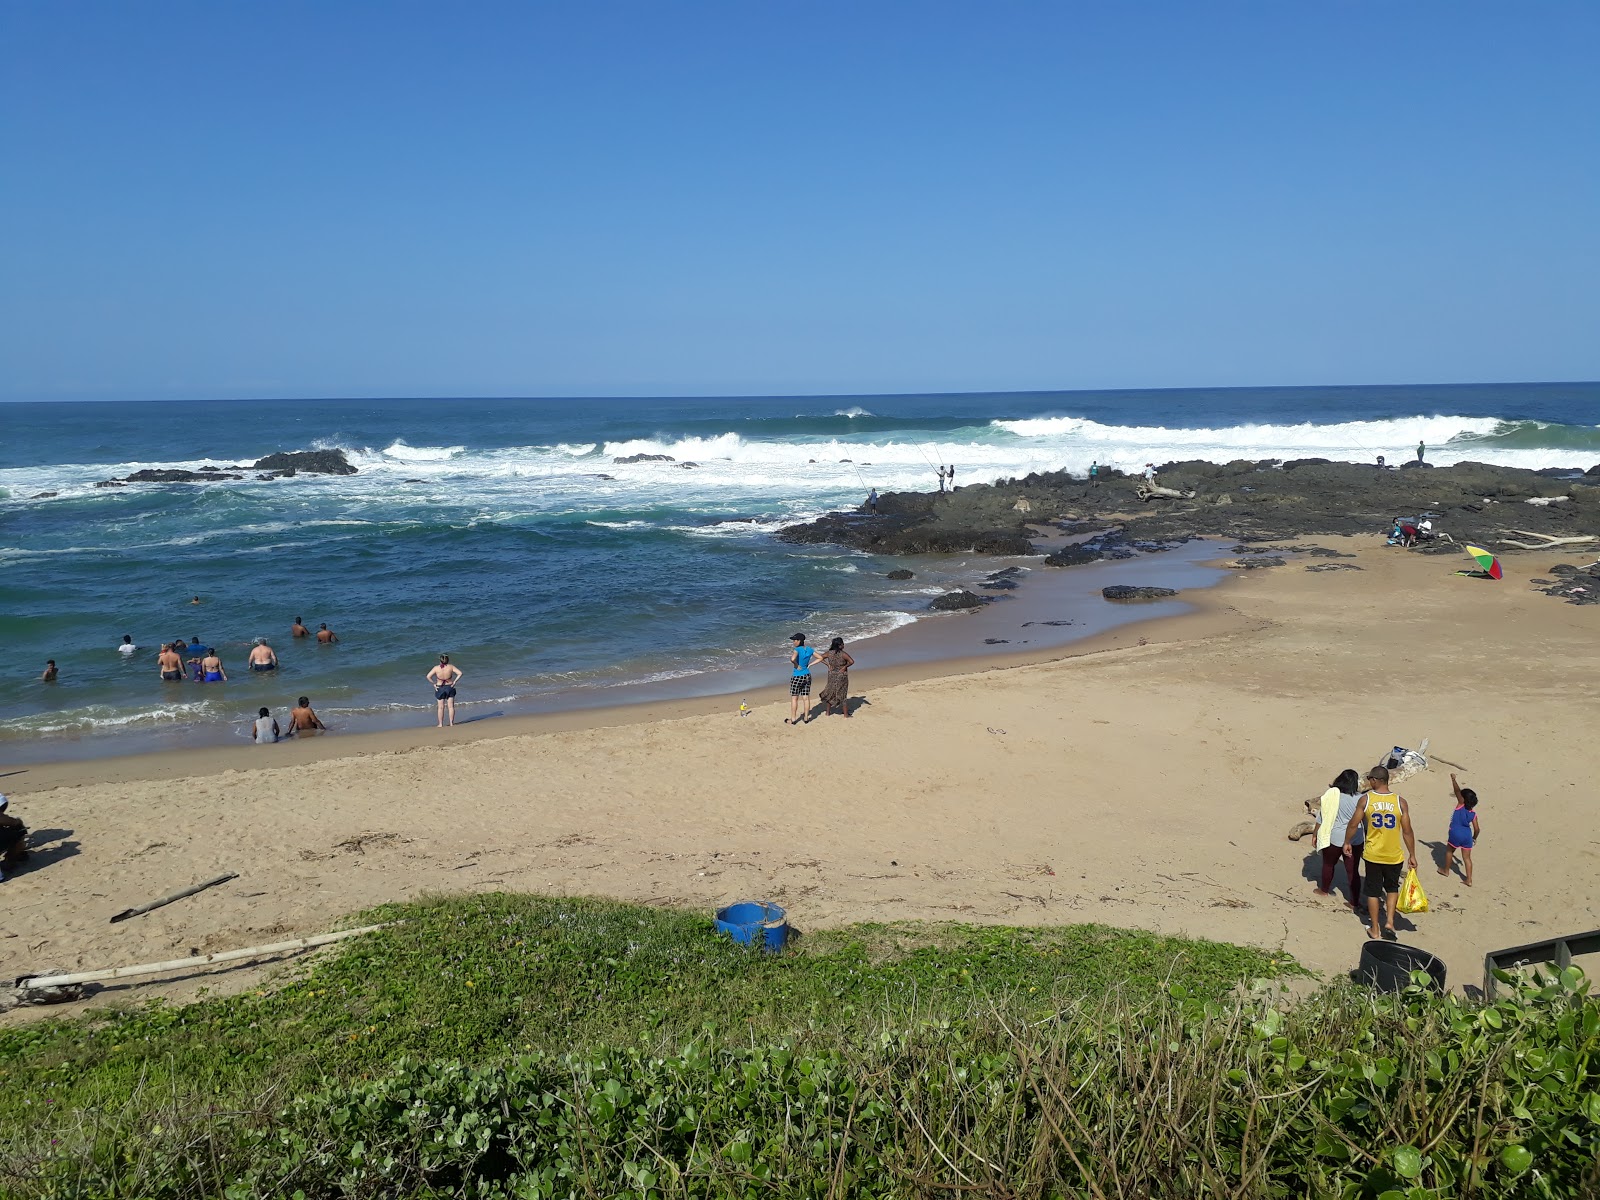 Umtentweni beach'in fotoğrafı parlak kum yüzey ile